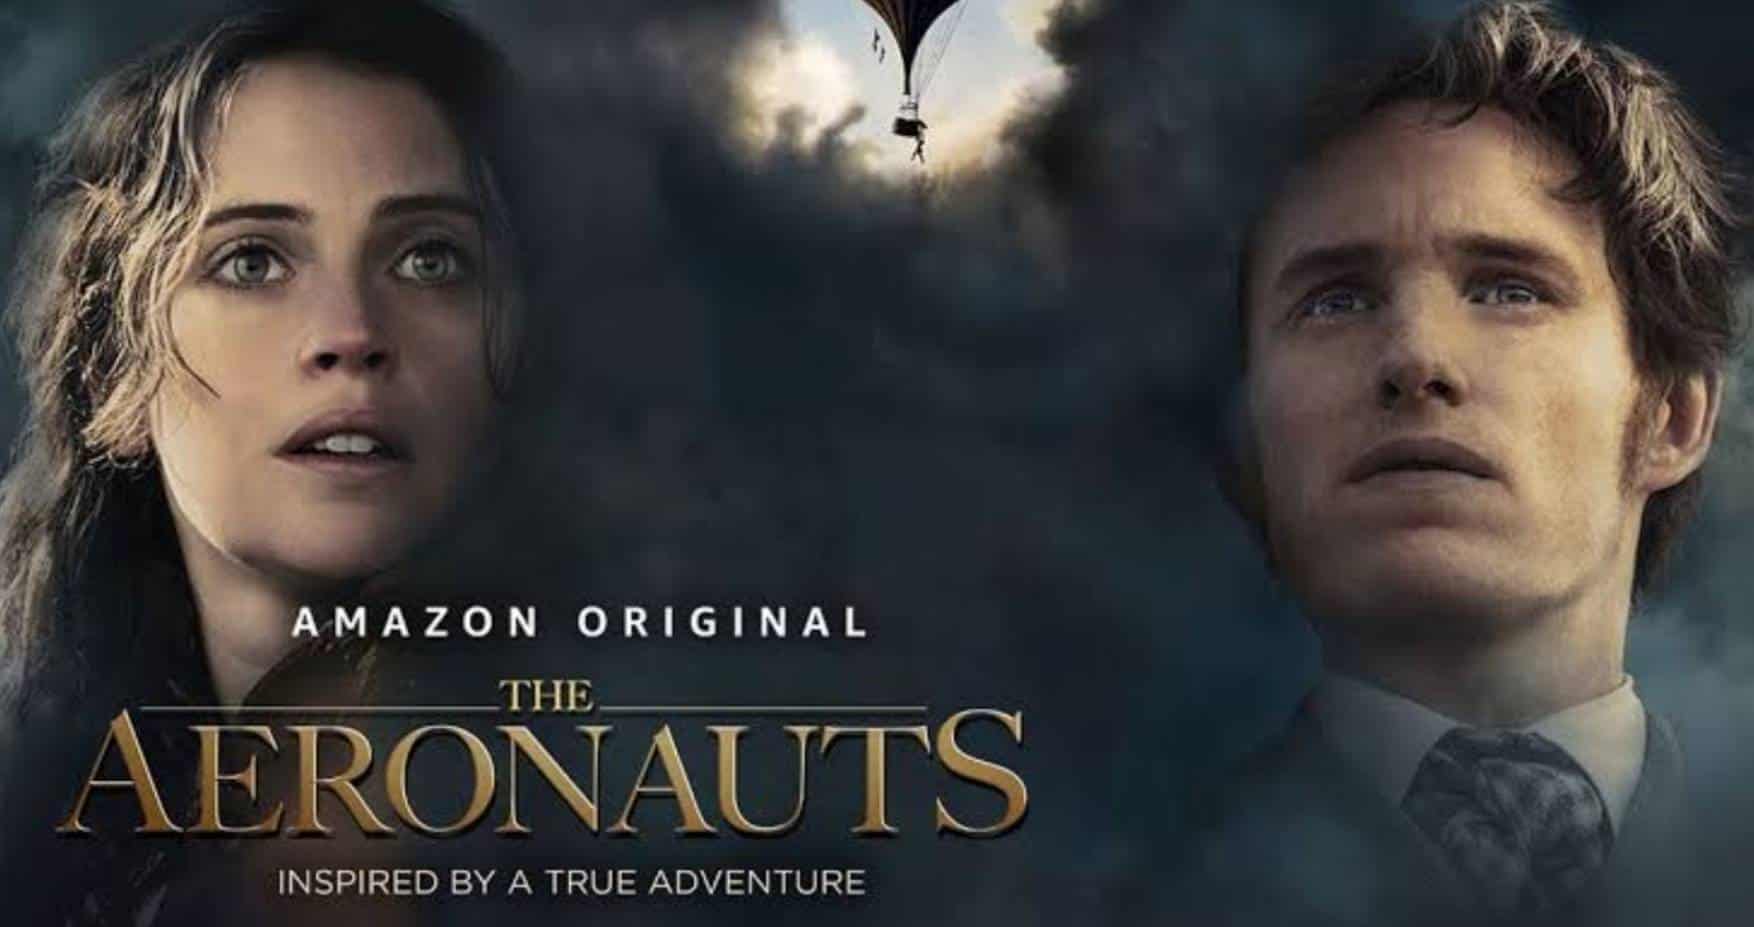 The Aeronauts- Based On True Events 